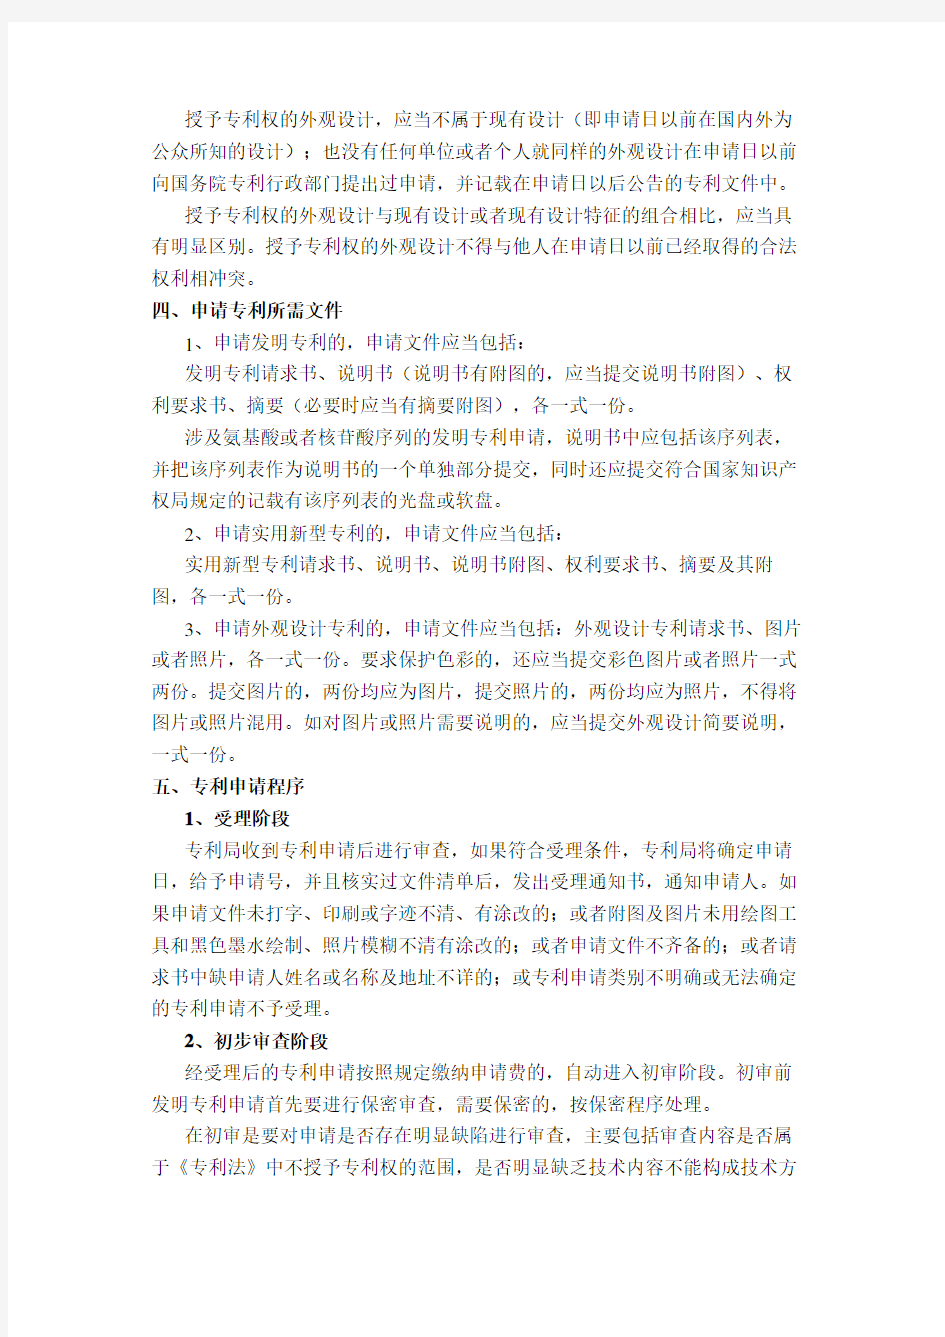 中国专利申请流程